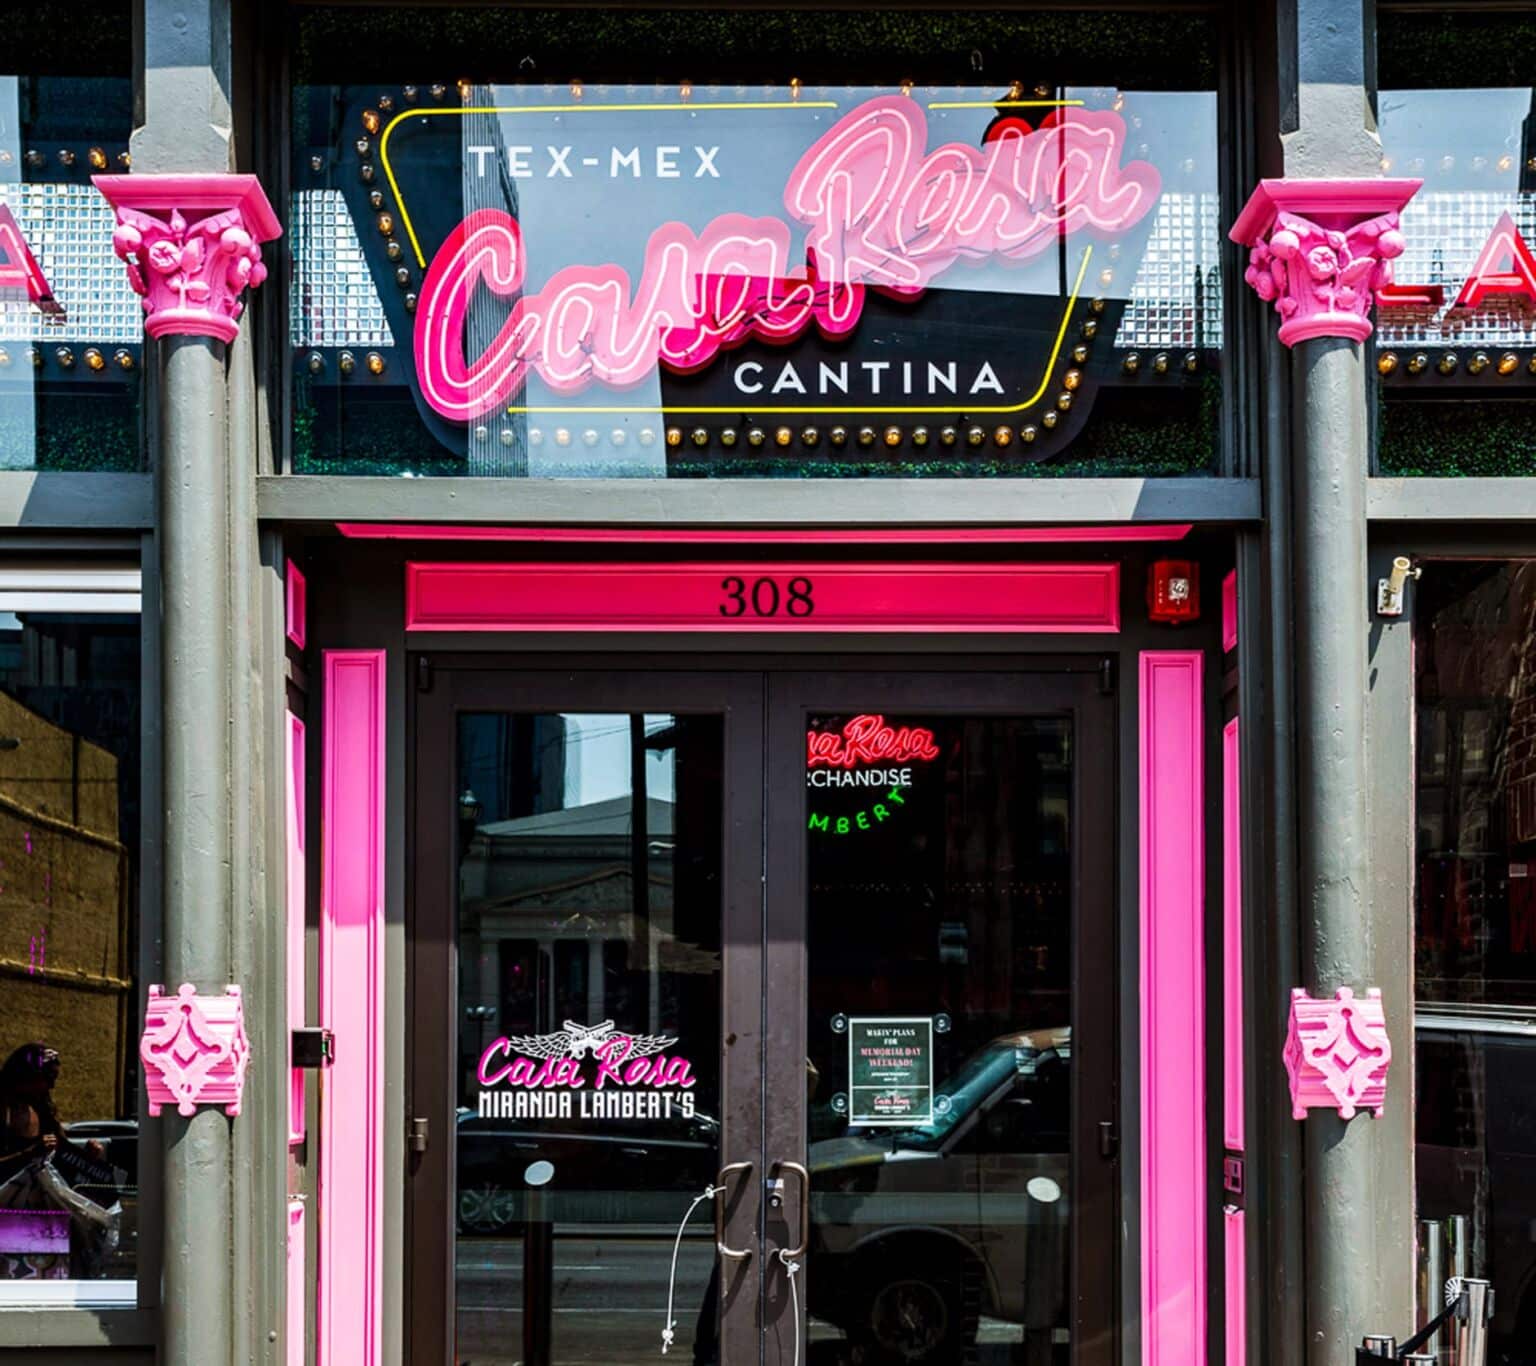 GALLERY Miranda Lambert's Casa Rosa Nashville